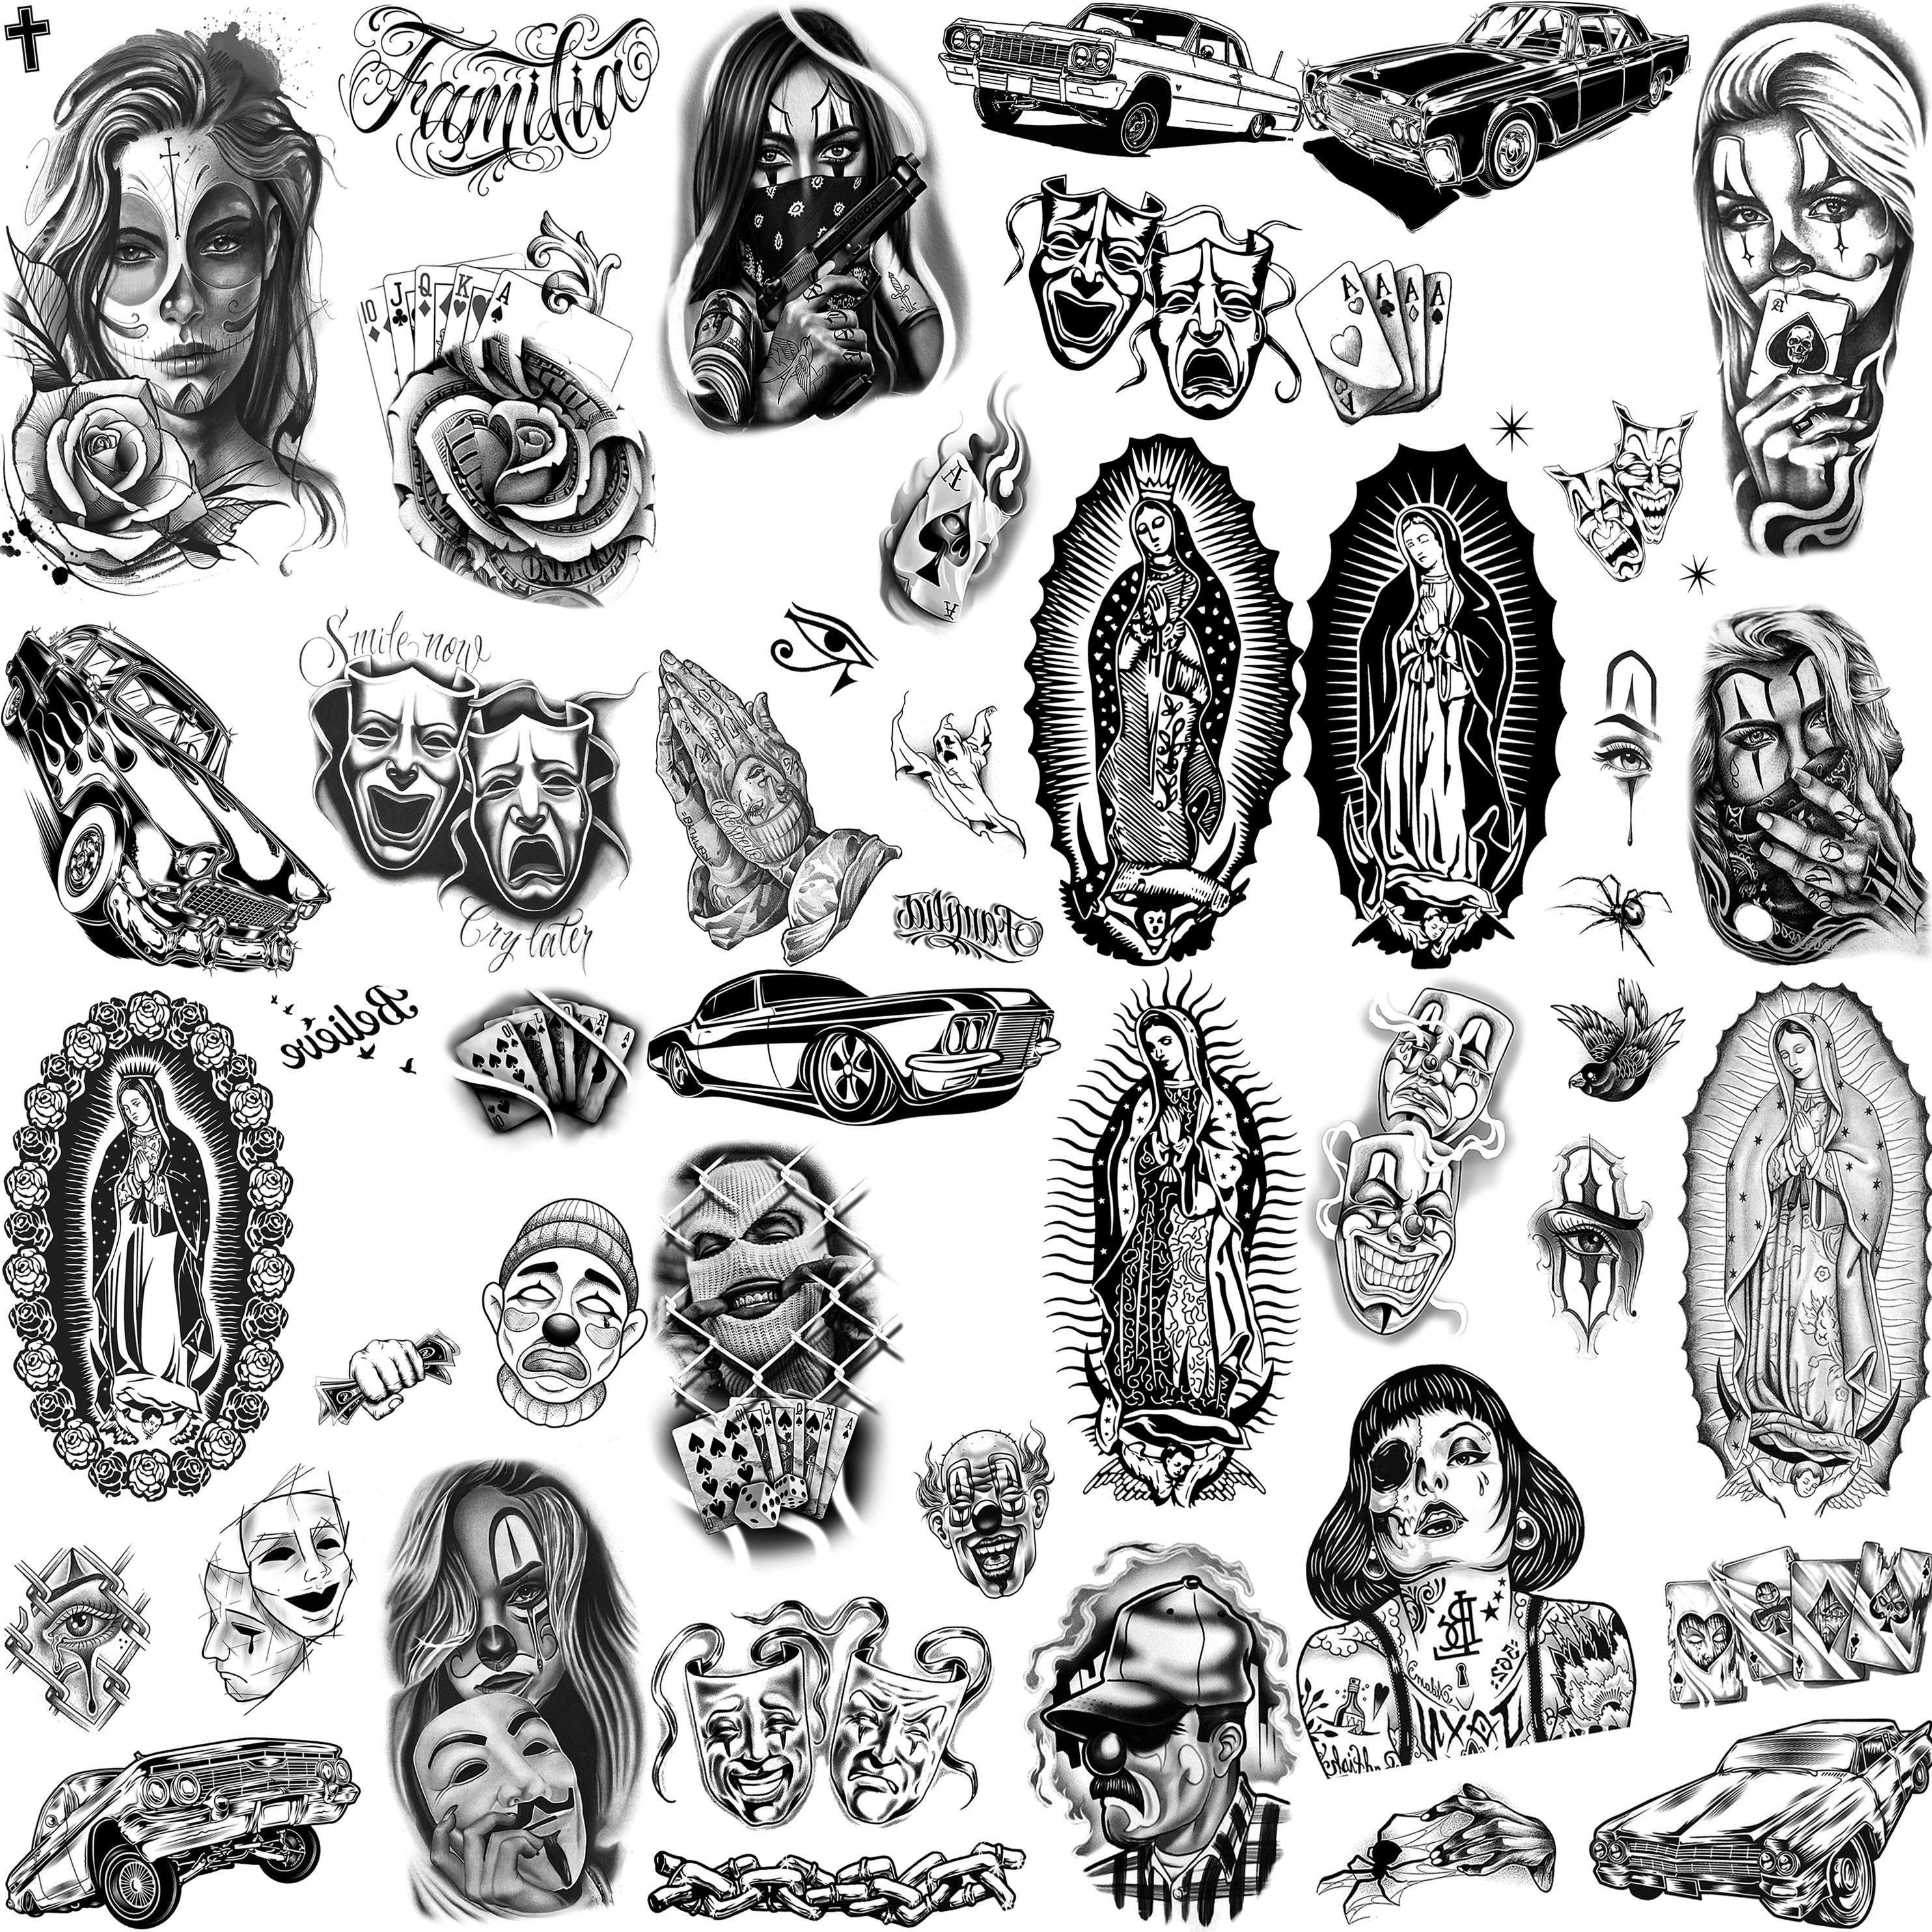 Lana Del Rey Stickers  Pegatinas para imprimir gratis, Lana del rey  tatuajes, Impresion de stickers